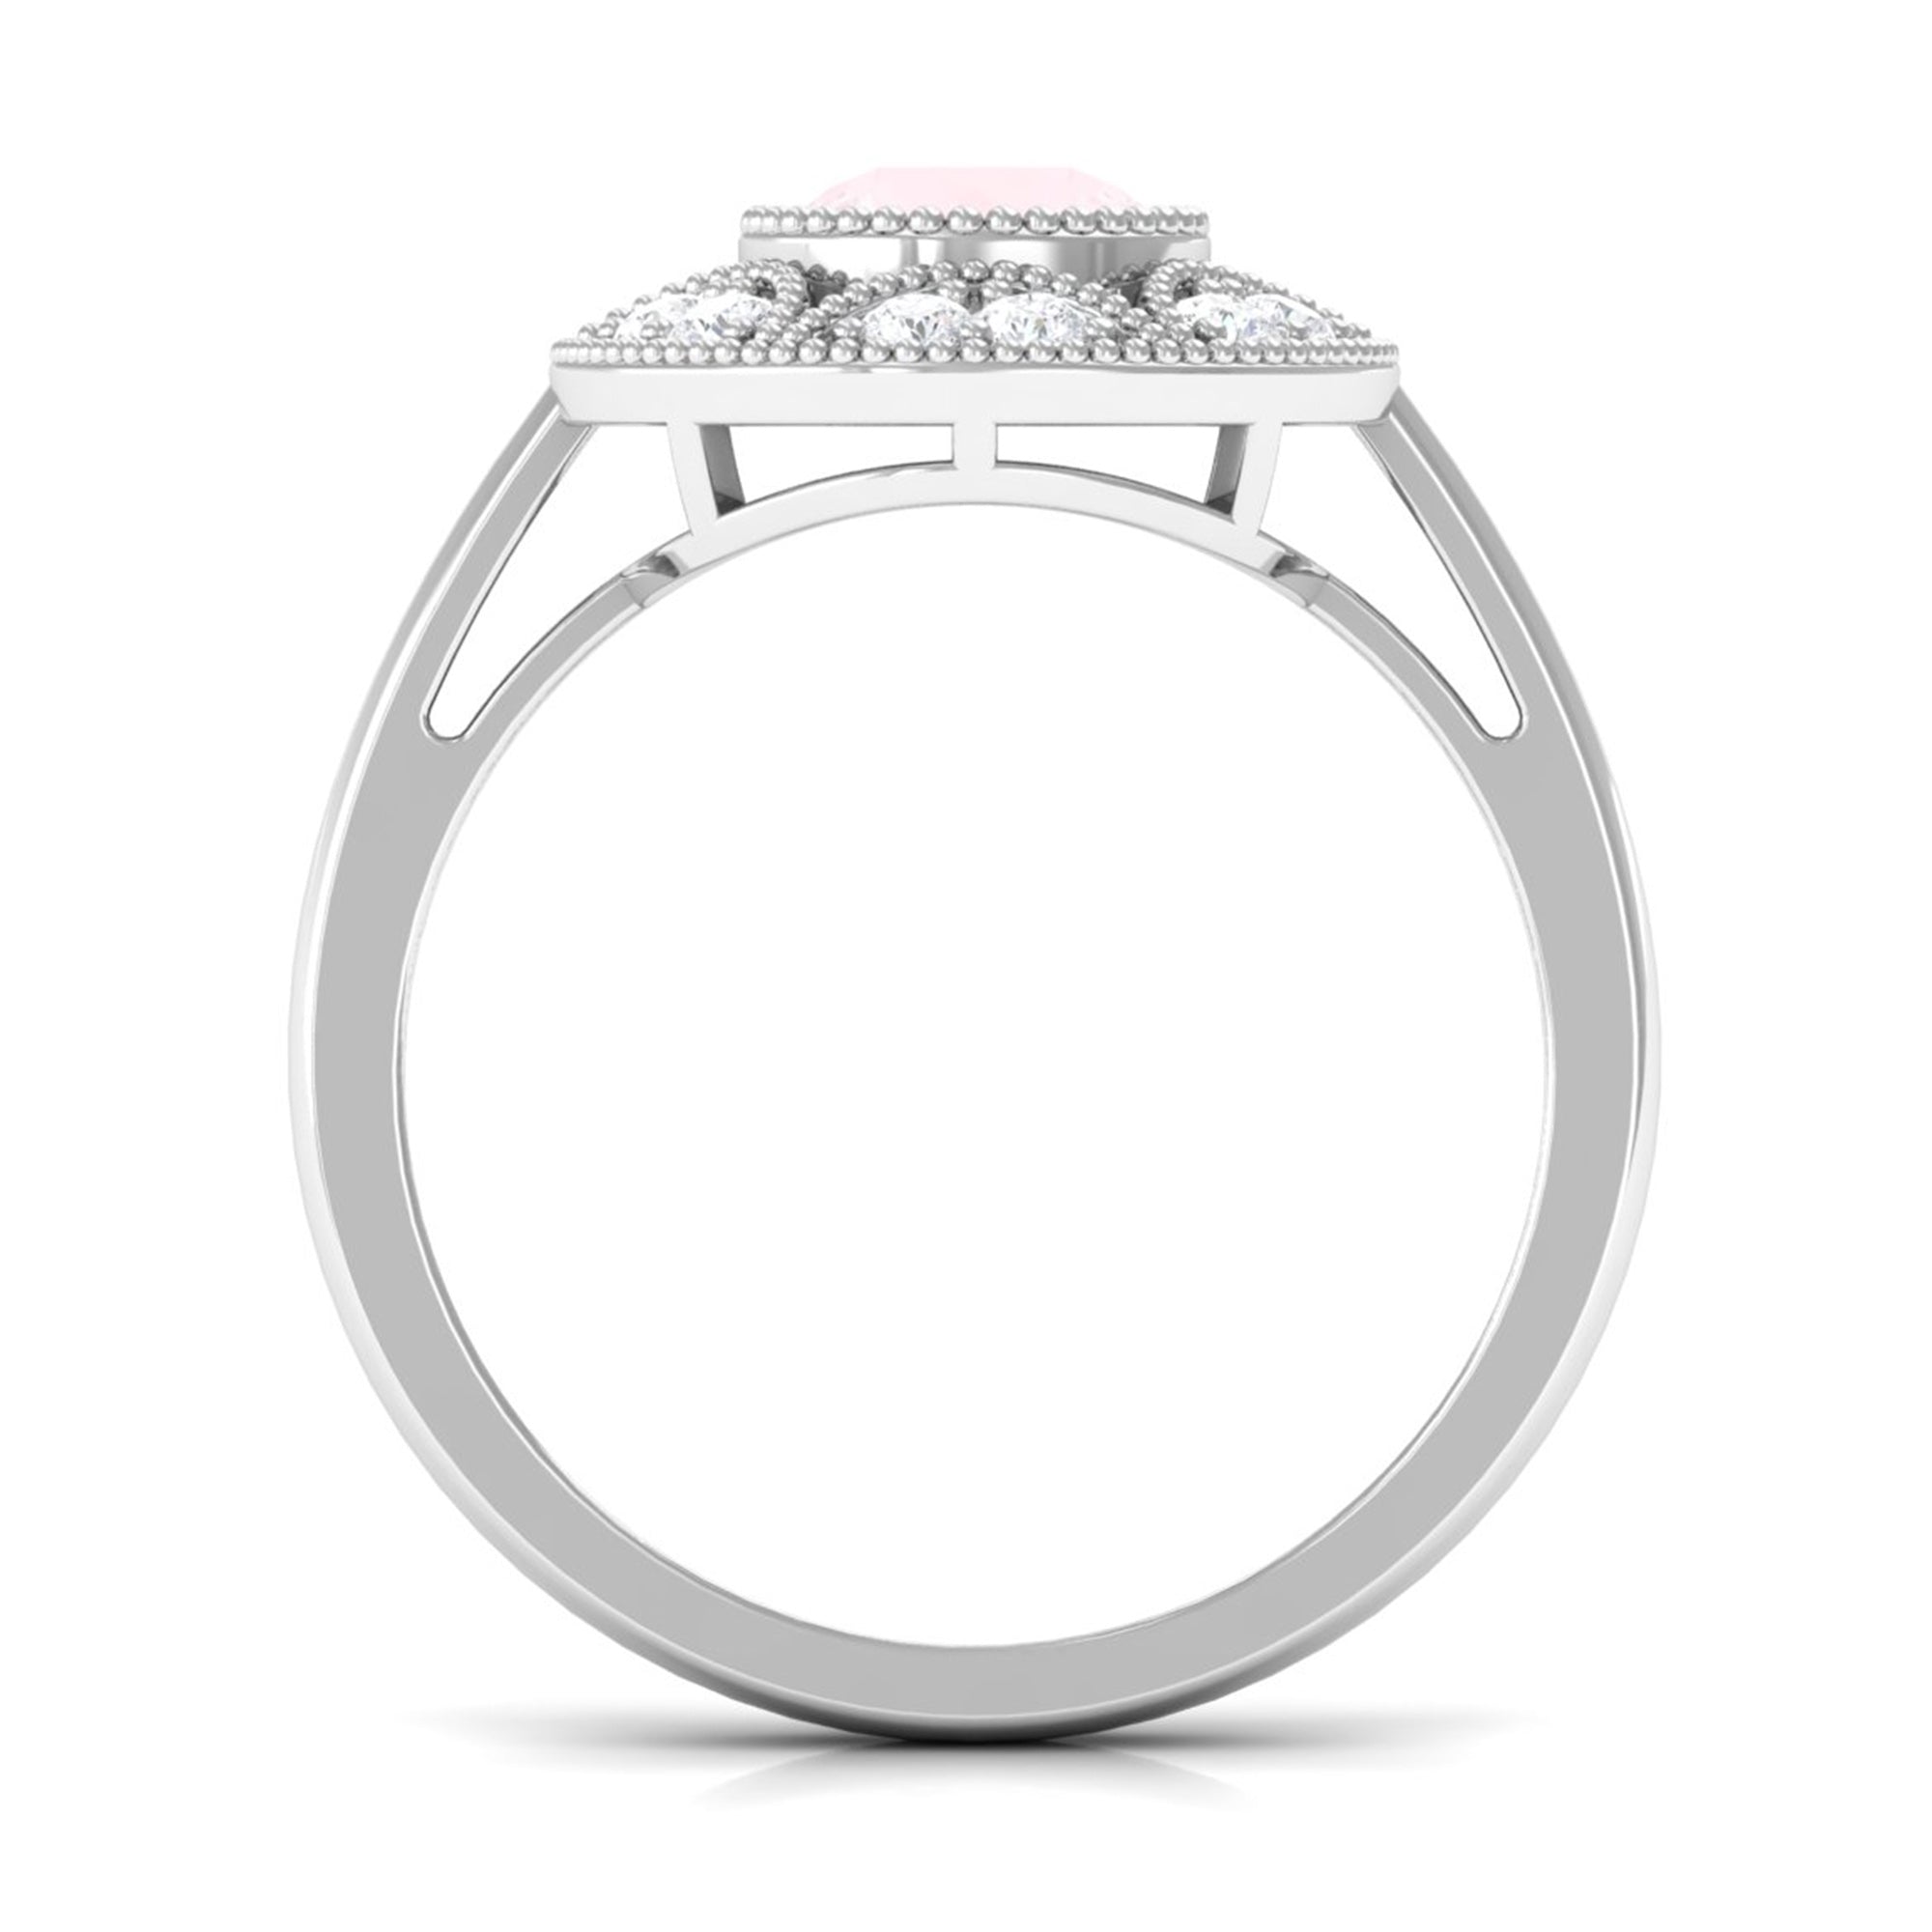 1.25 CT Round Rose Quartz and Diamond Vintage Engagement Ring Rose Quartz - ( AAA ) - Quality - Rosec Jewels